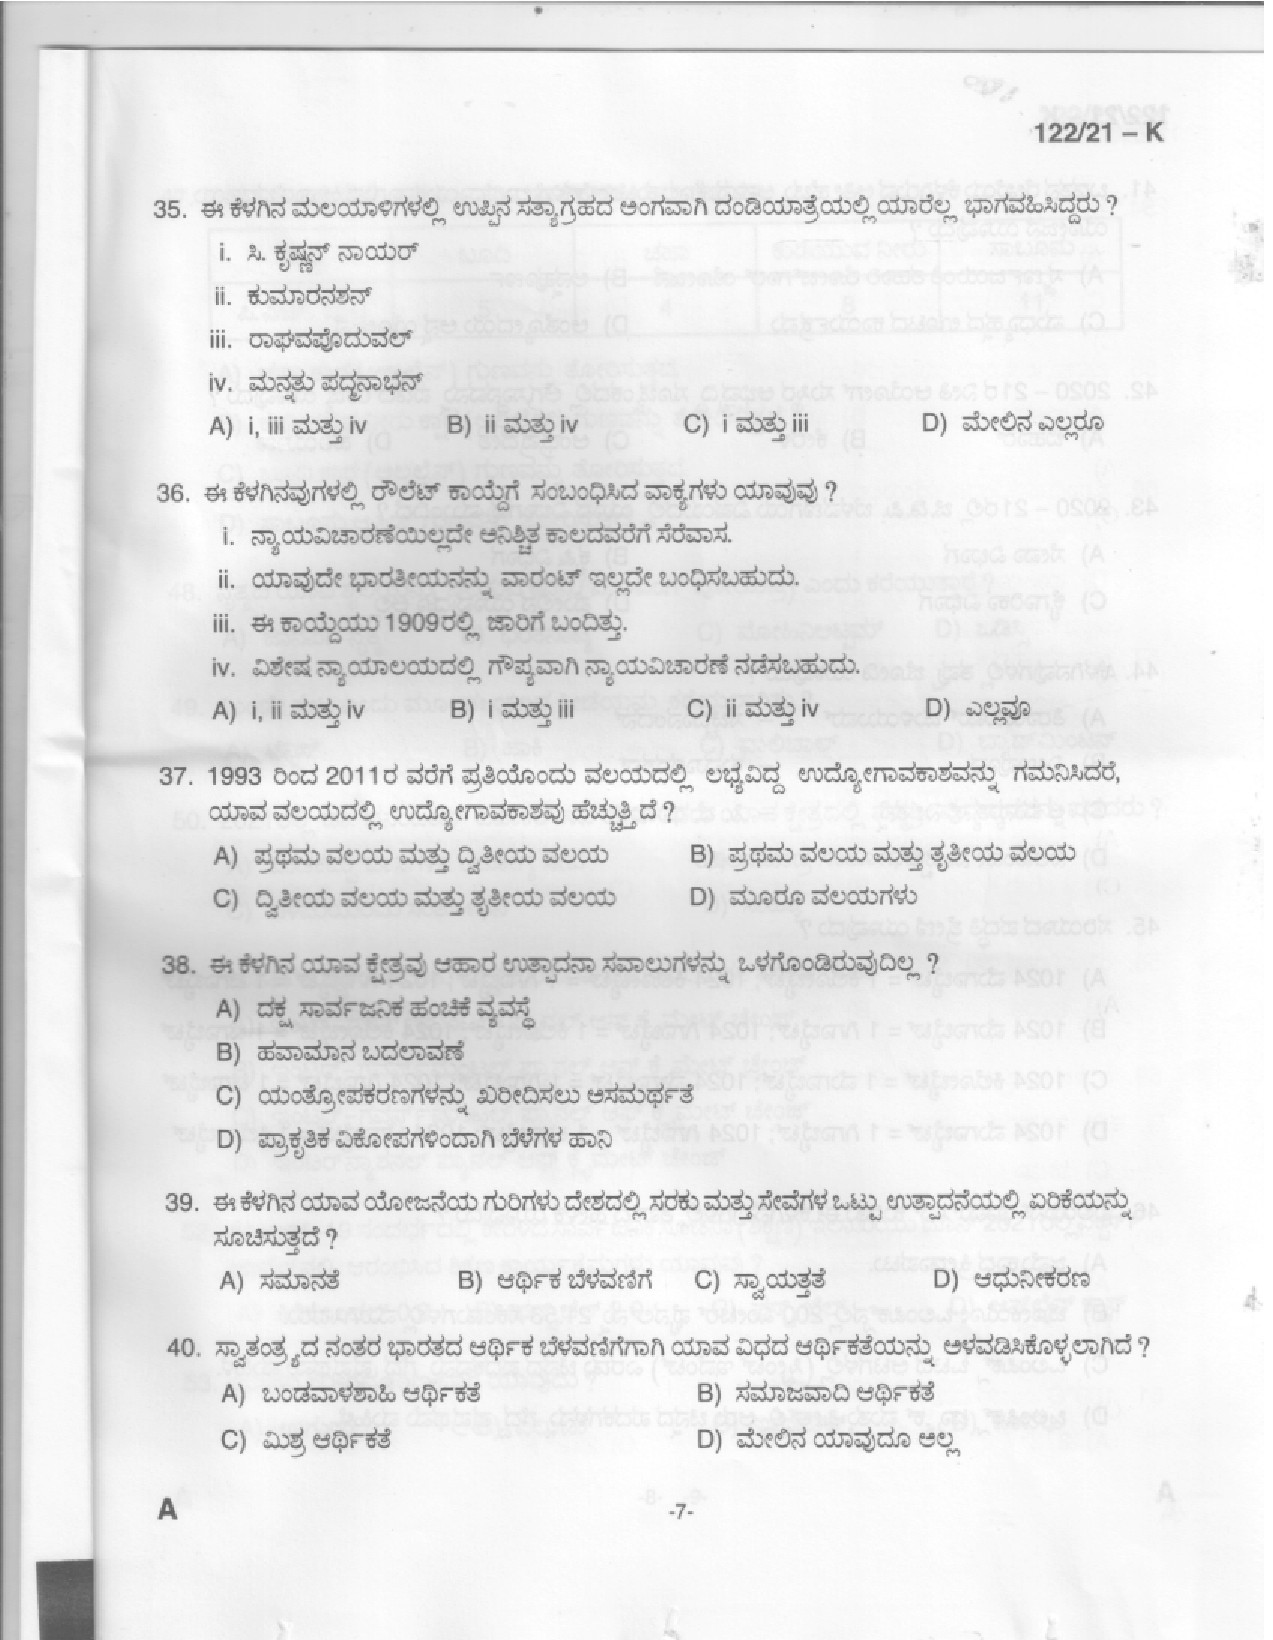 KPSC Upto SSLC Level Main Examination LGS Kannada 2021 Code 1222021 K 5